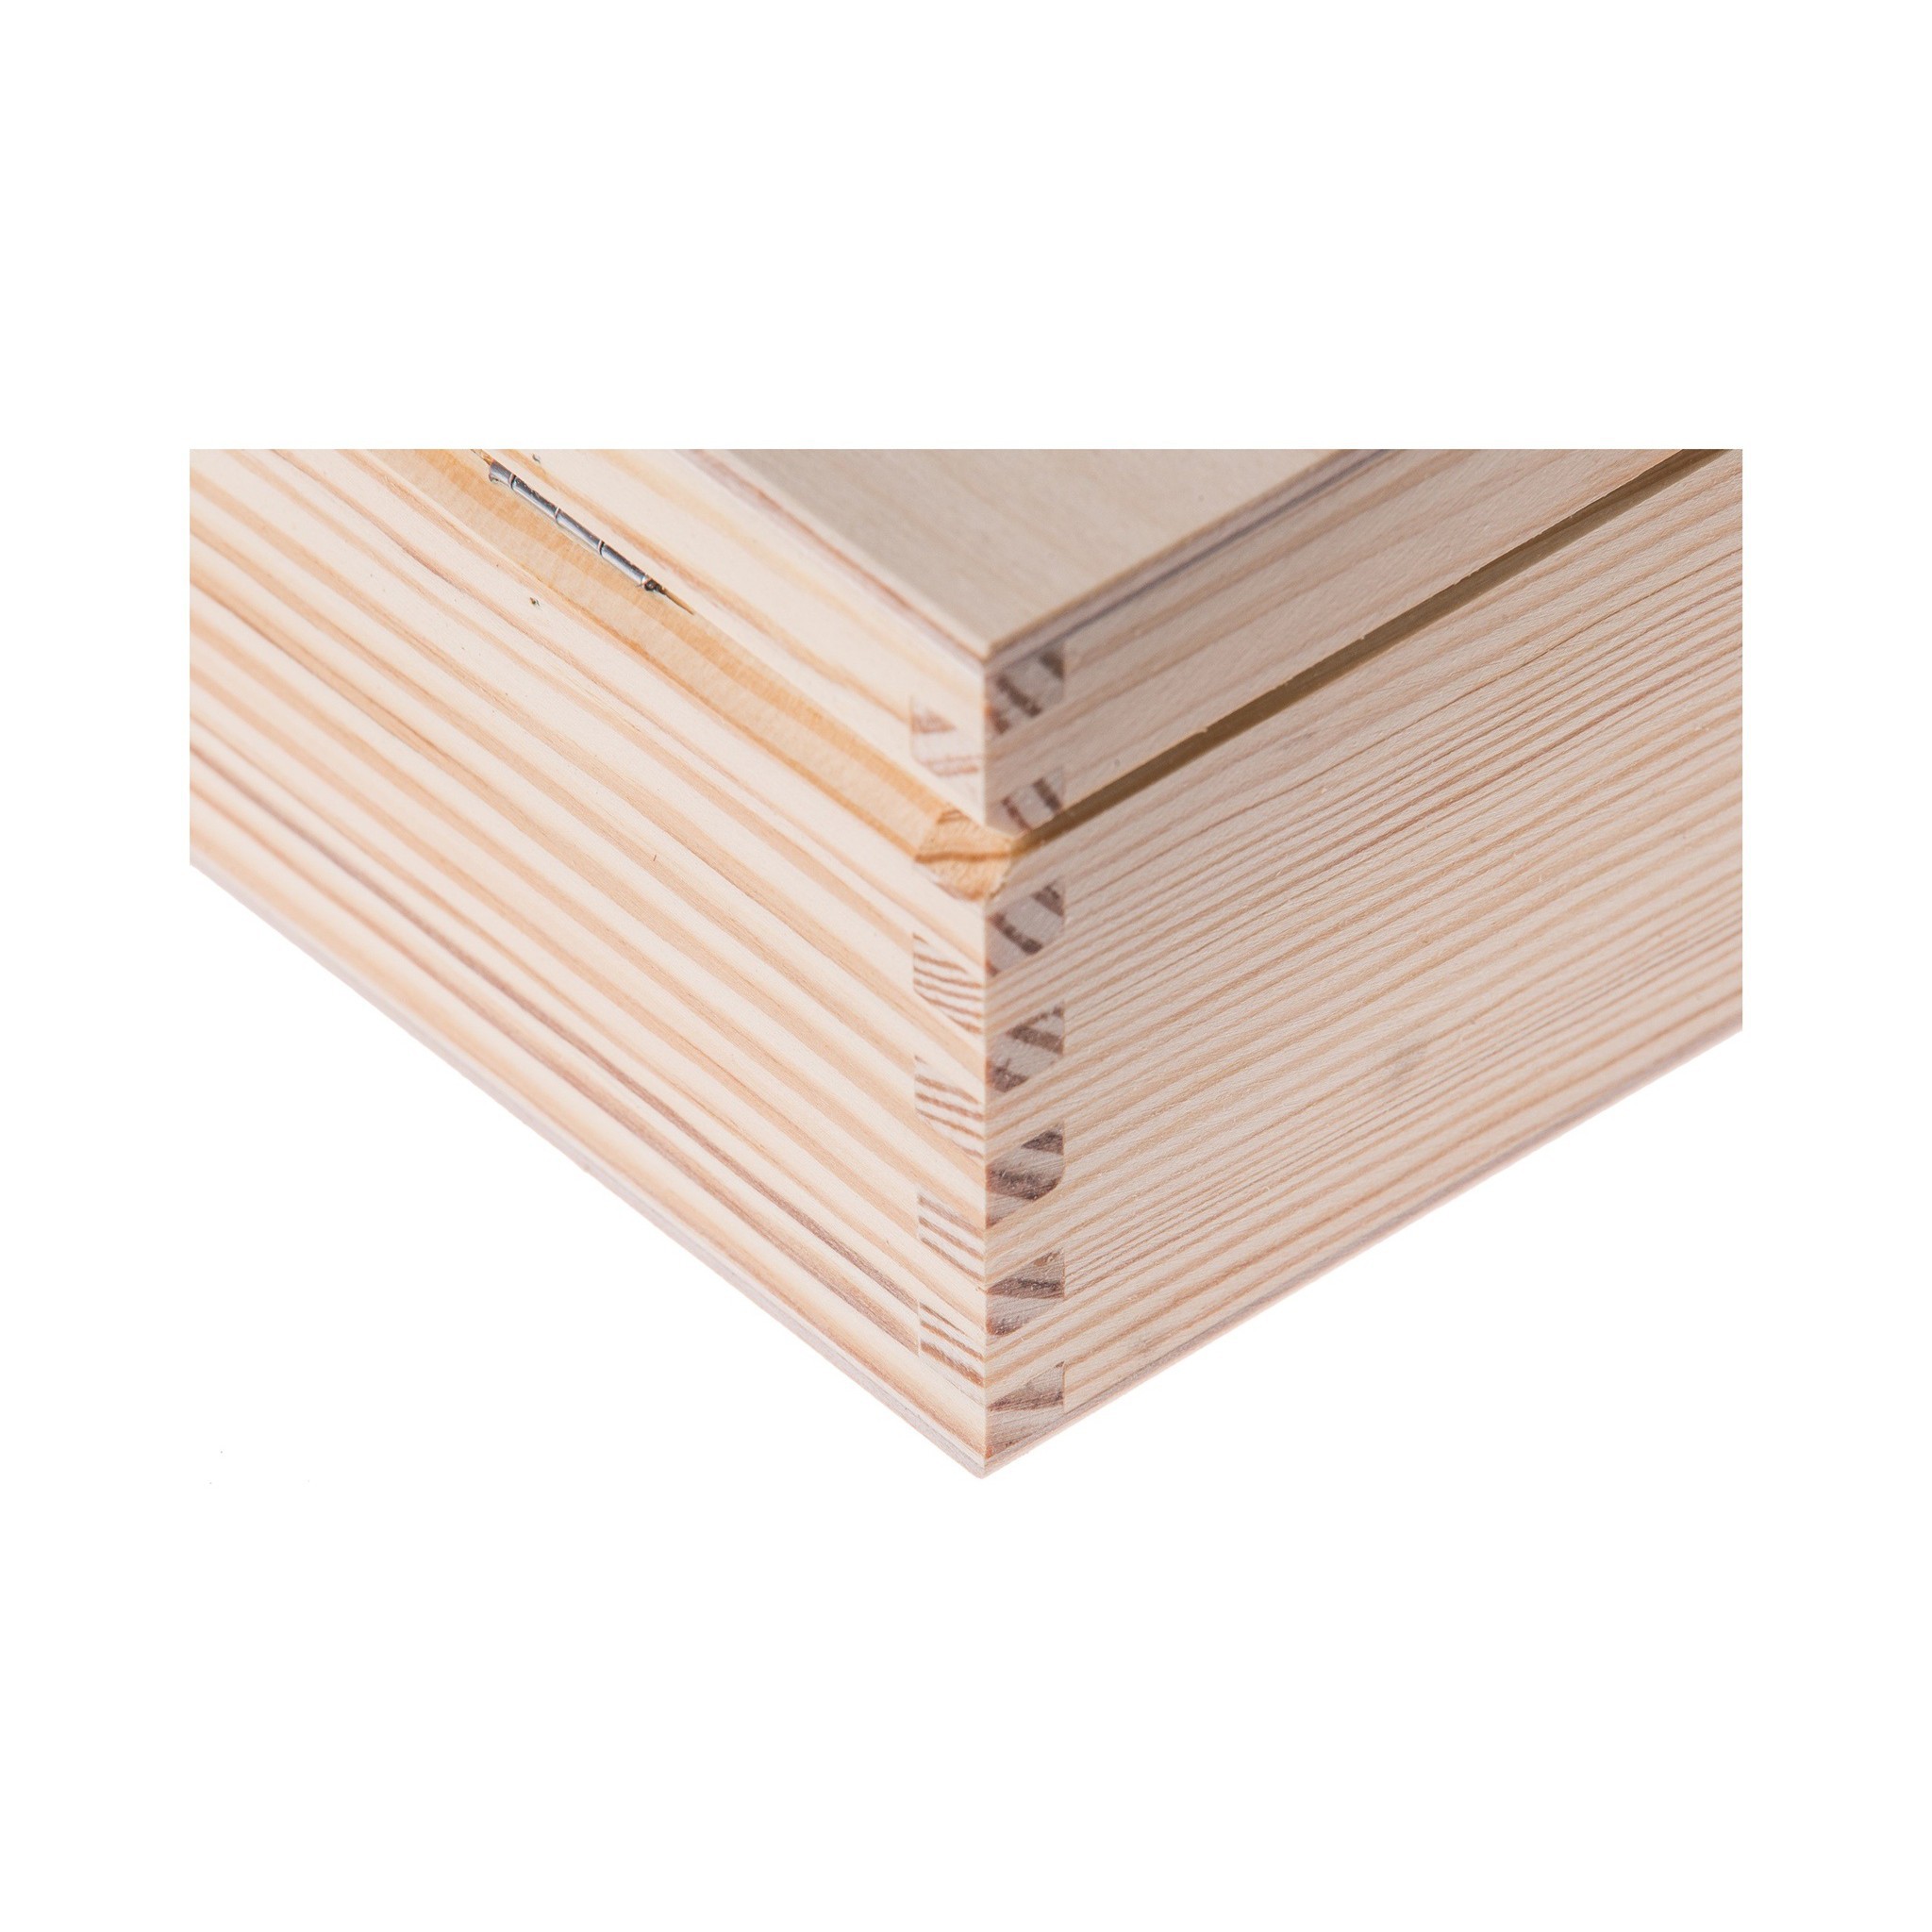 Dřevěná krabička s 2 přihrádkami 9x16x8 cm borovice megamix.shop